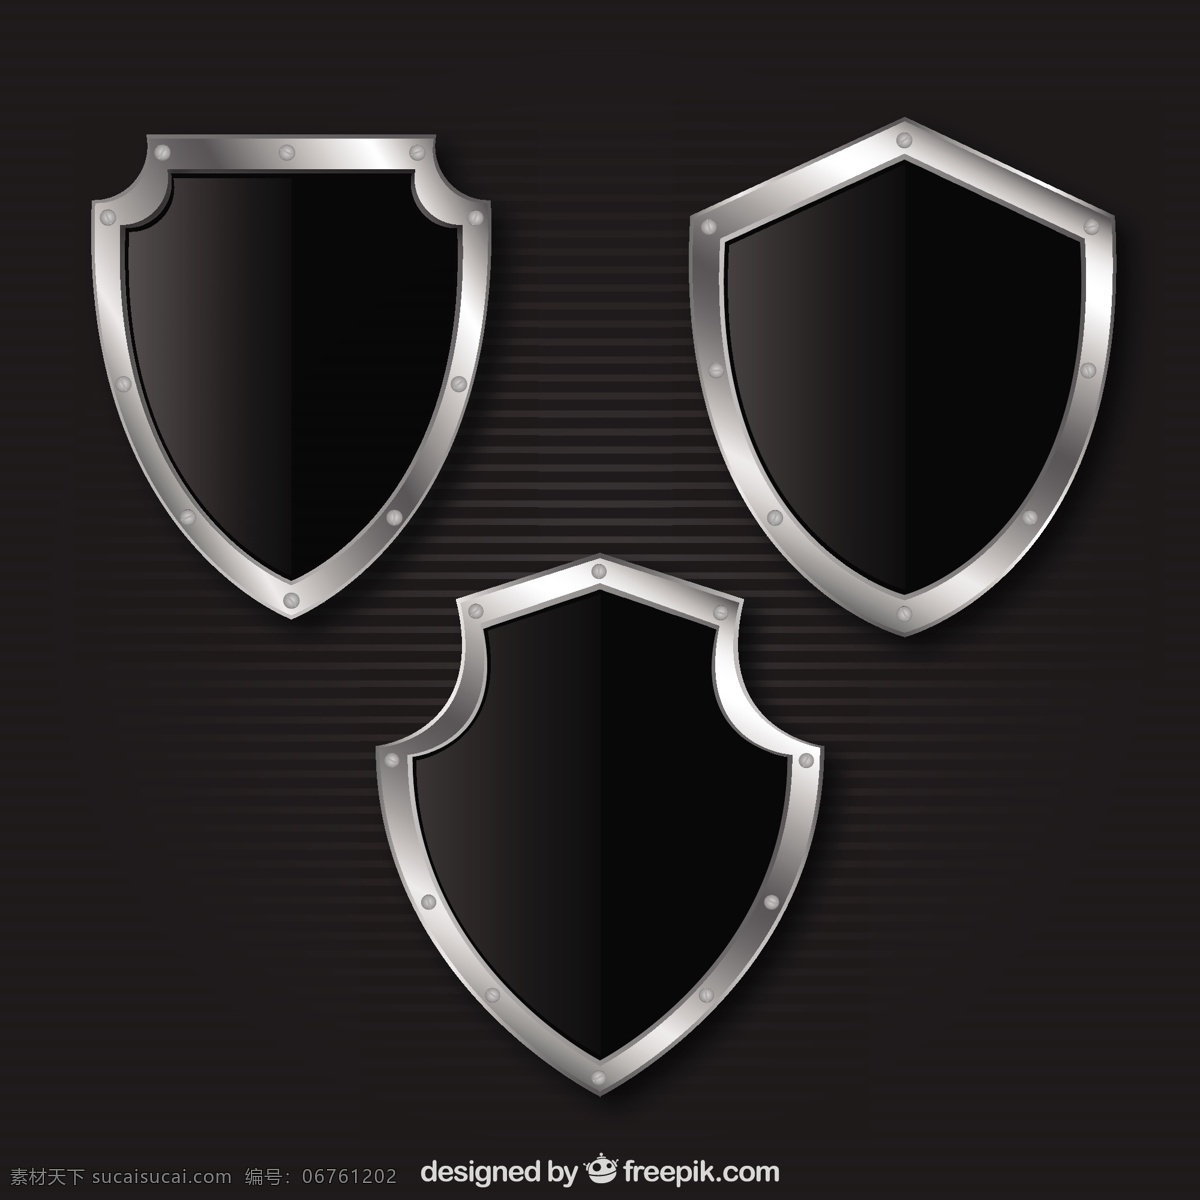 金属屏蔽采集 屏蔽 金属 安全 黑 徽 保护 徽章 安全保护 盾牌 采集 防火墙 后卫 防守 黑色